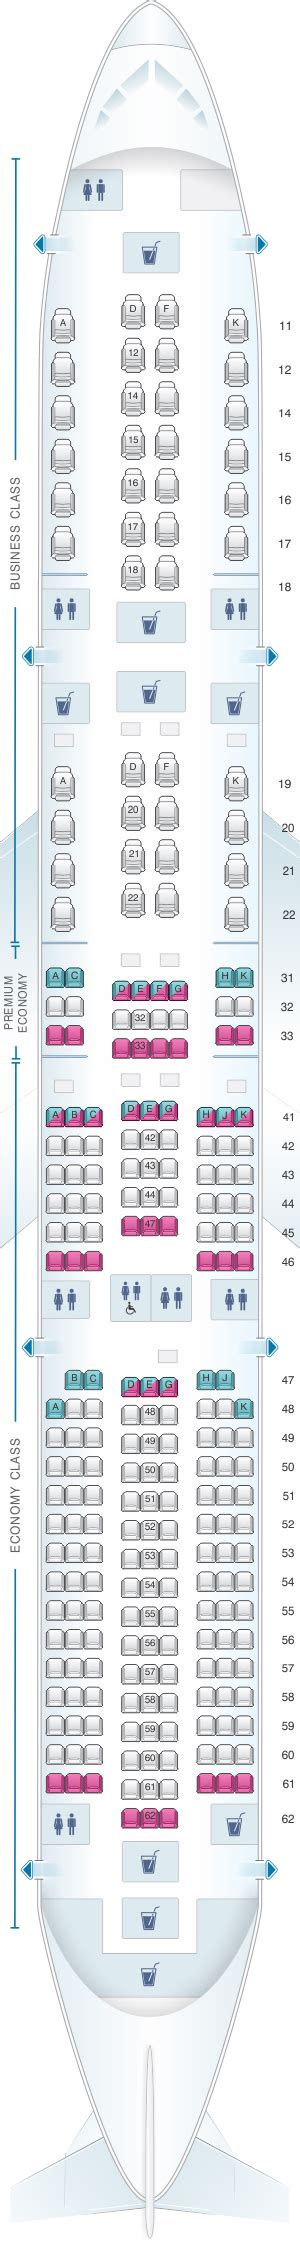 seat map singapore airlines airbus   seatmaestro